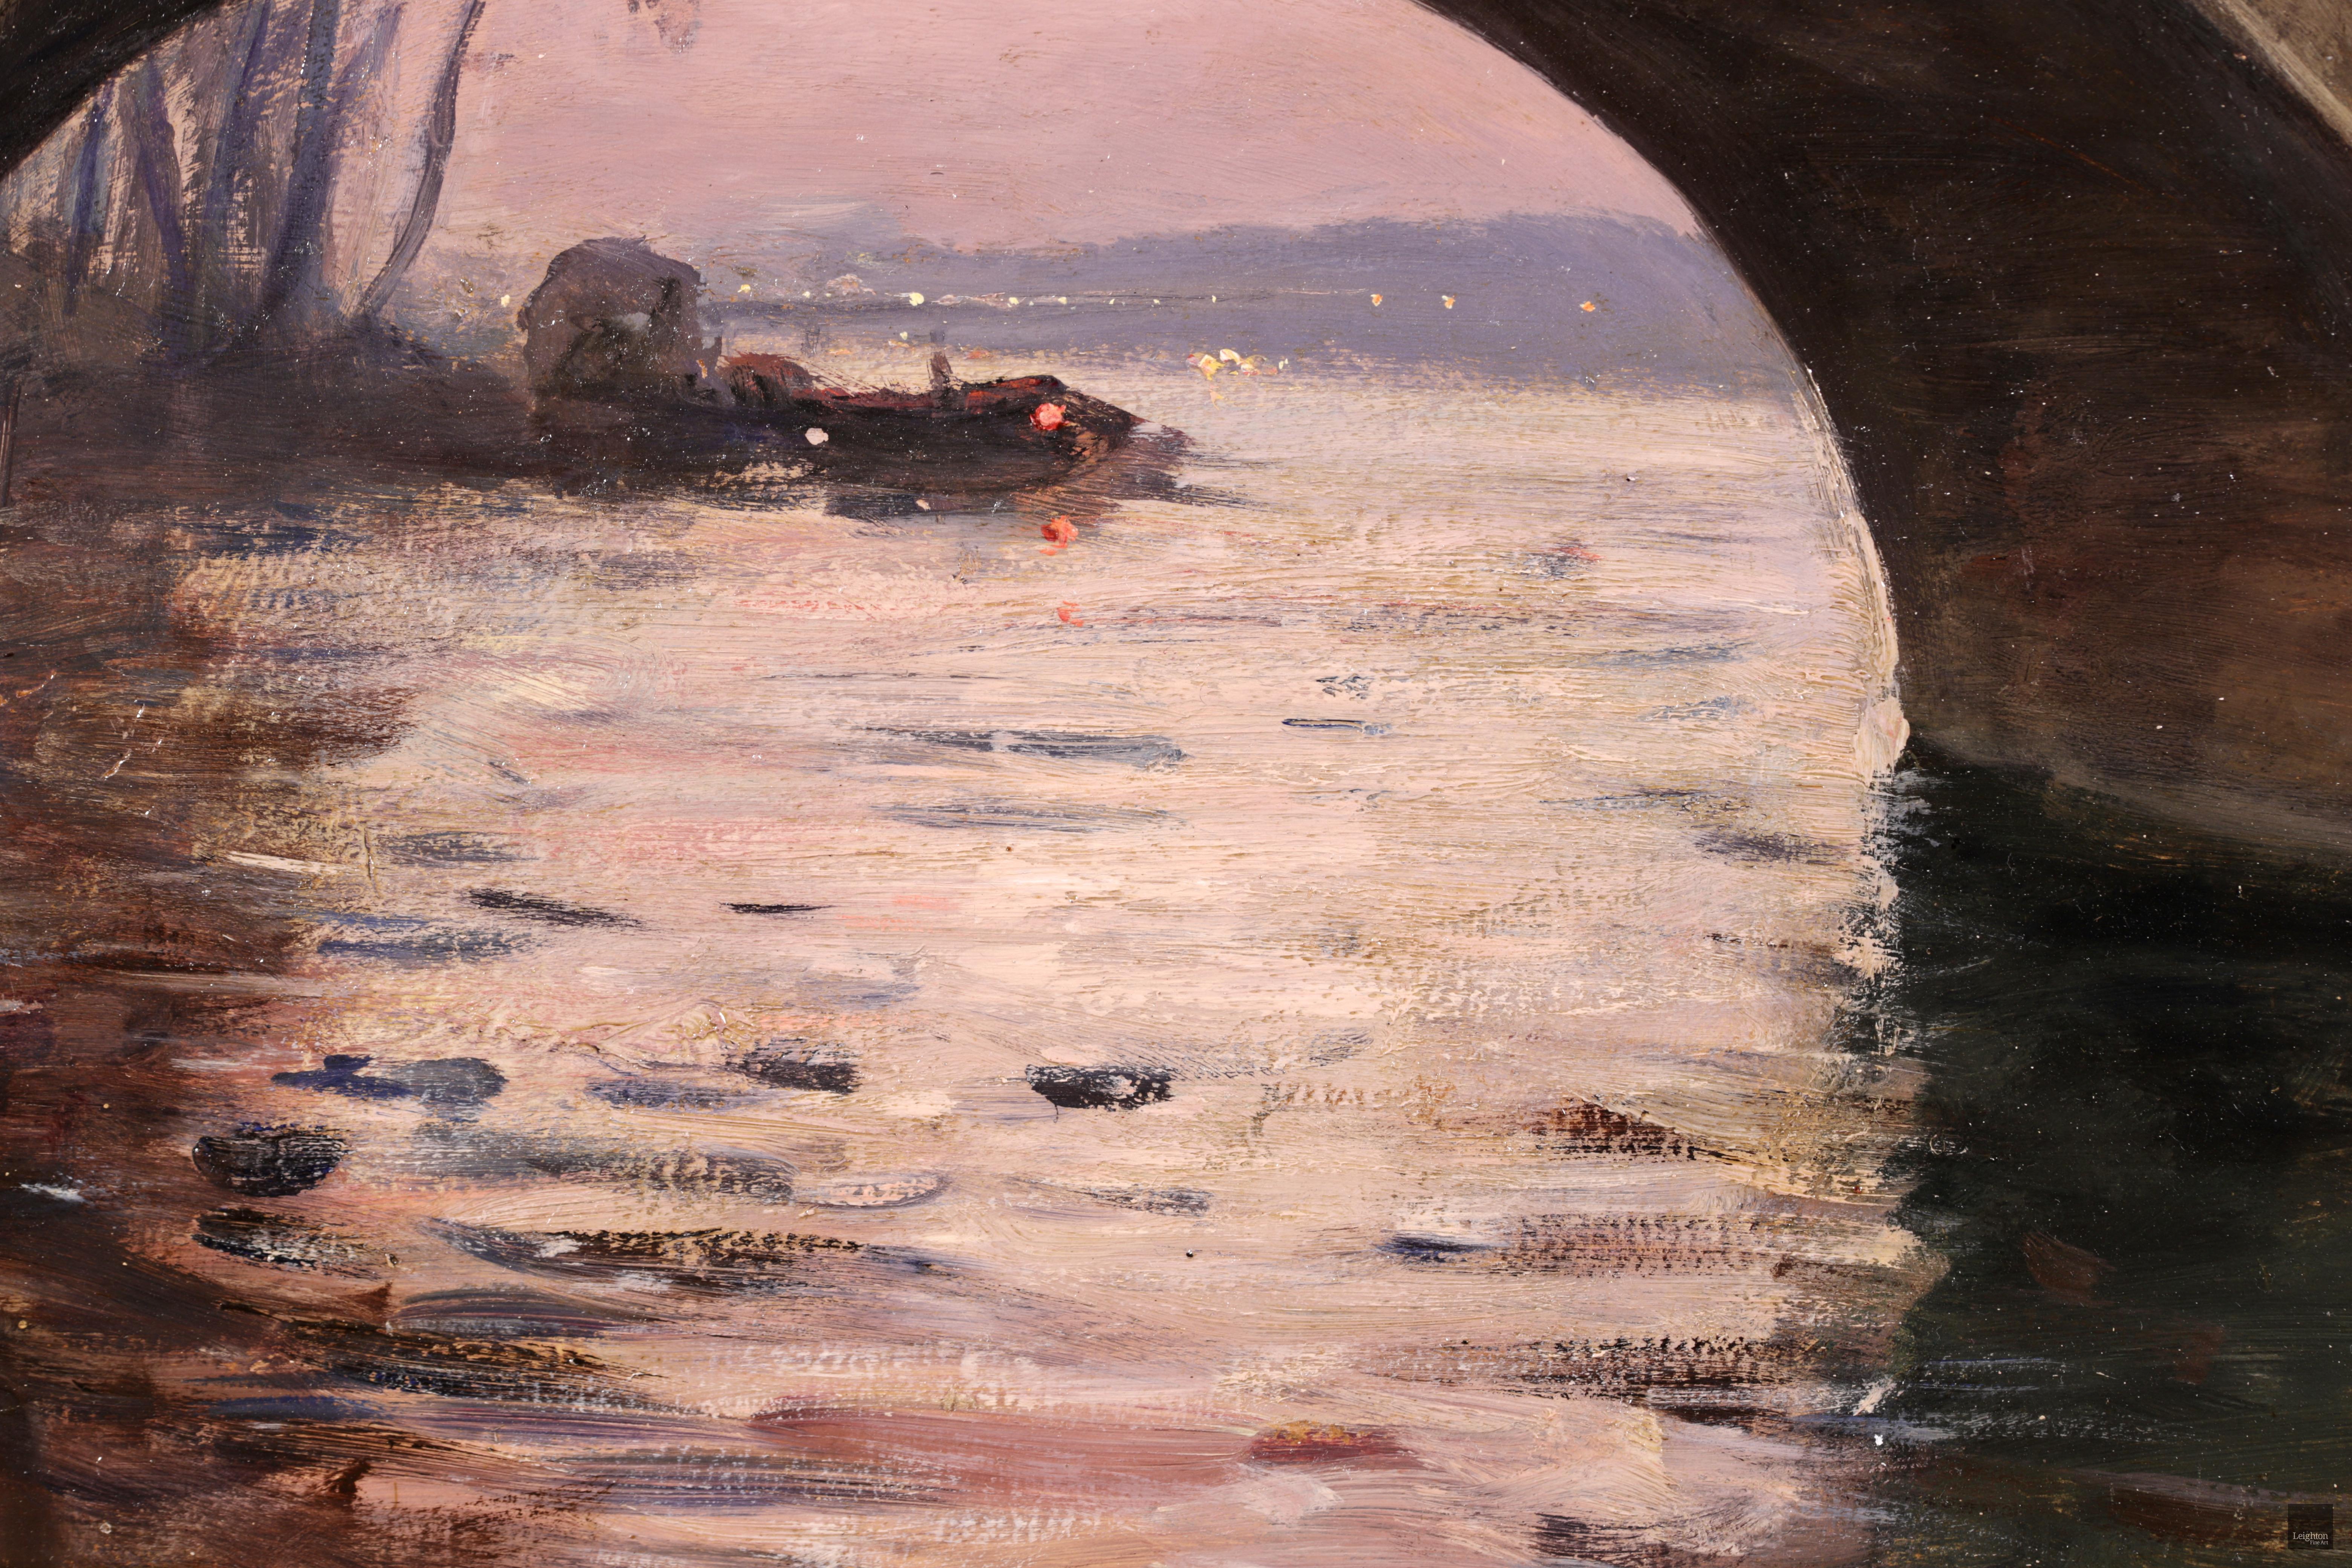 Below the Pont Marie - Paris 1889, Impressionist Oil Riverscape by Gabriel Loppe 2